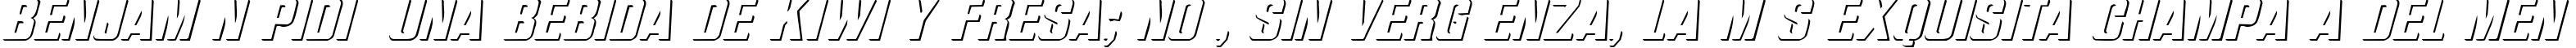 Пример написания шрифтом Relief Grotesk Italic текста на испанском